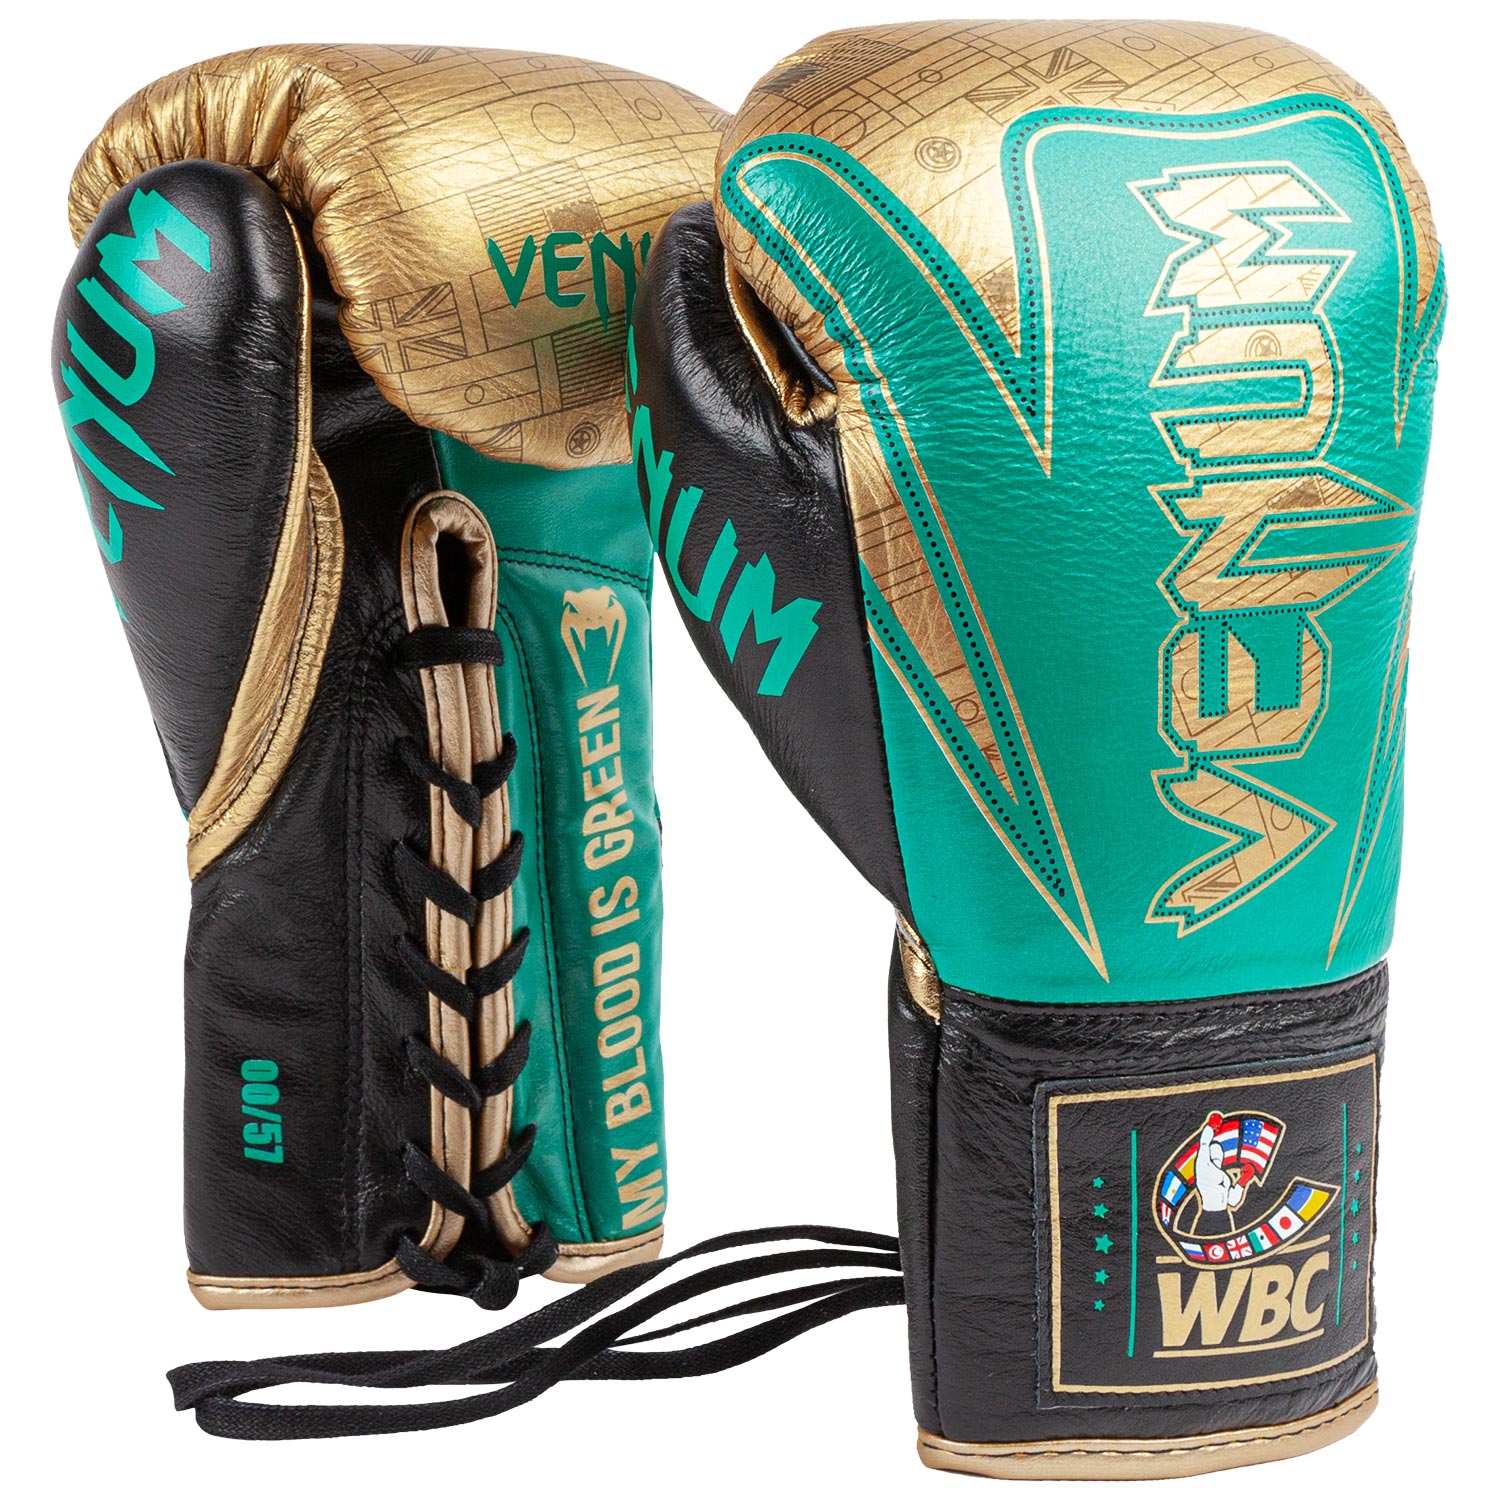 Venum HAMMER professionelle Boxhandschuhe - WBC limitierte Auflage - M –  Venum Schweiz | Boxhandschuhe